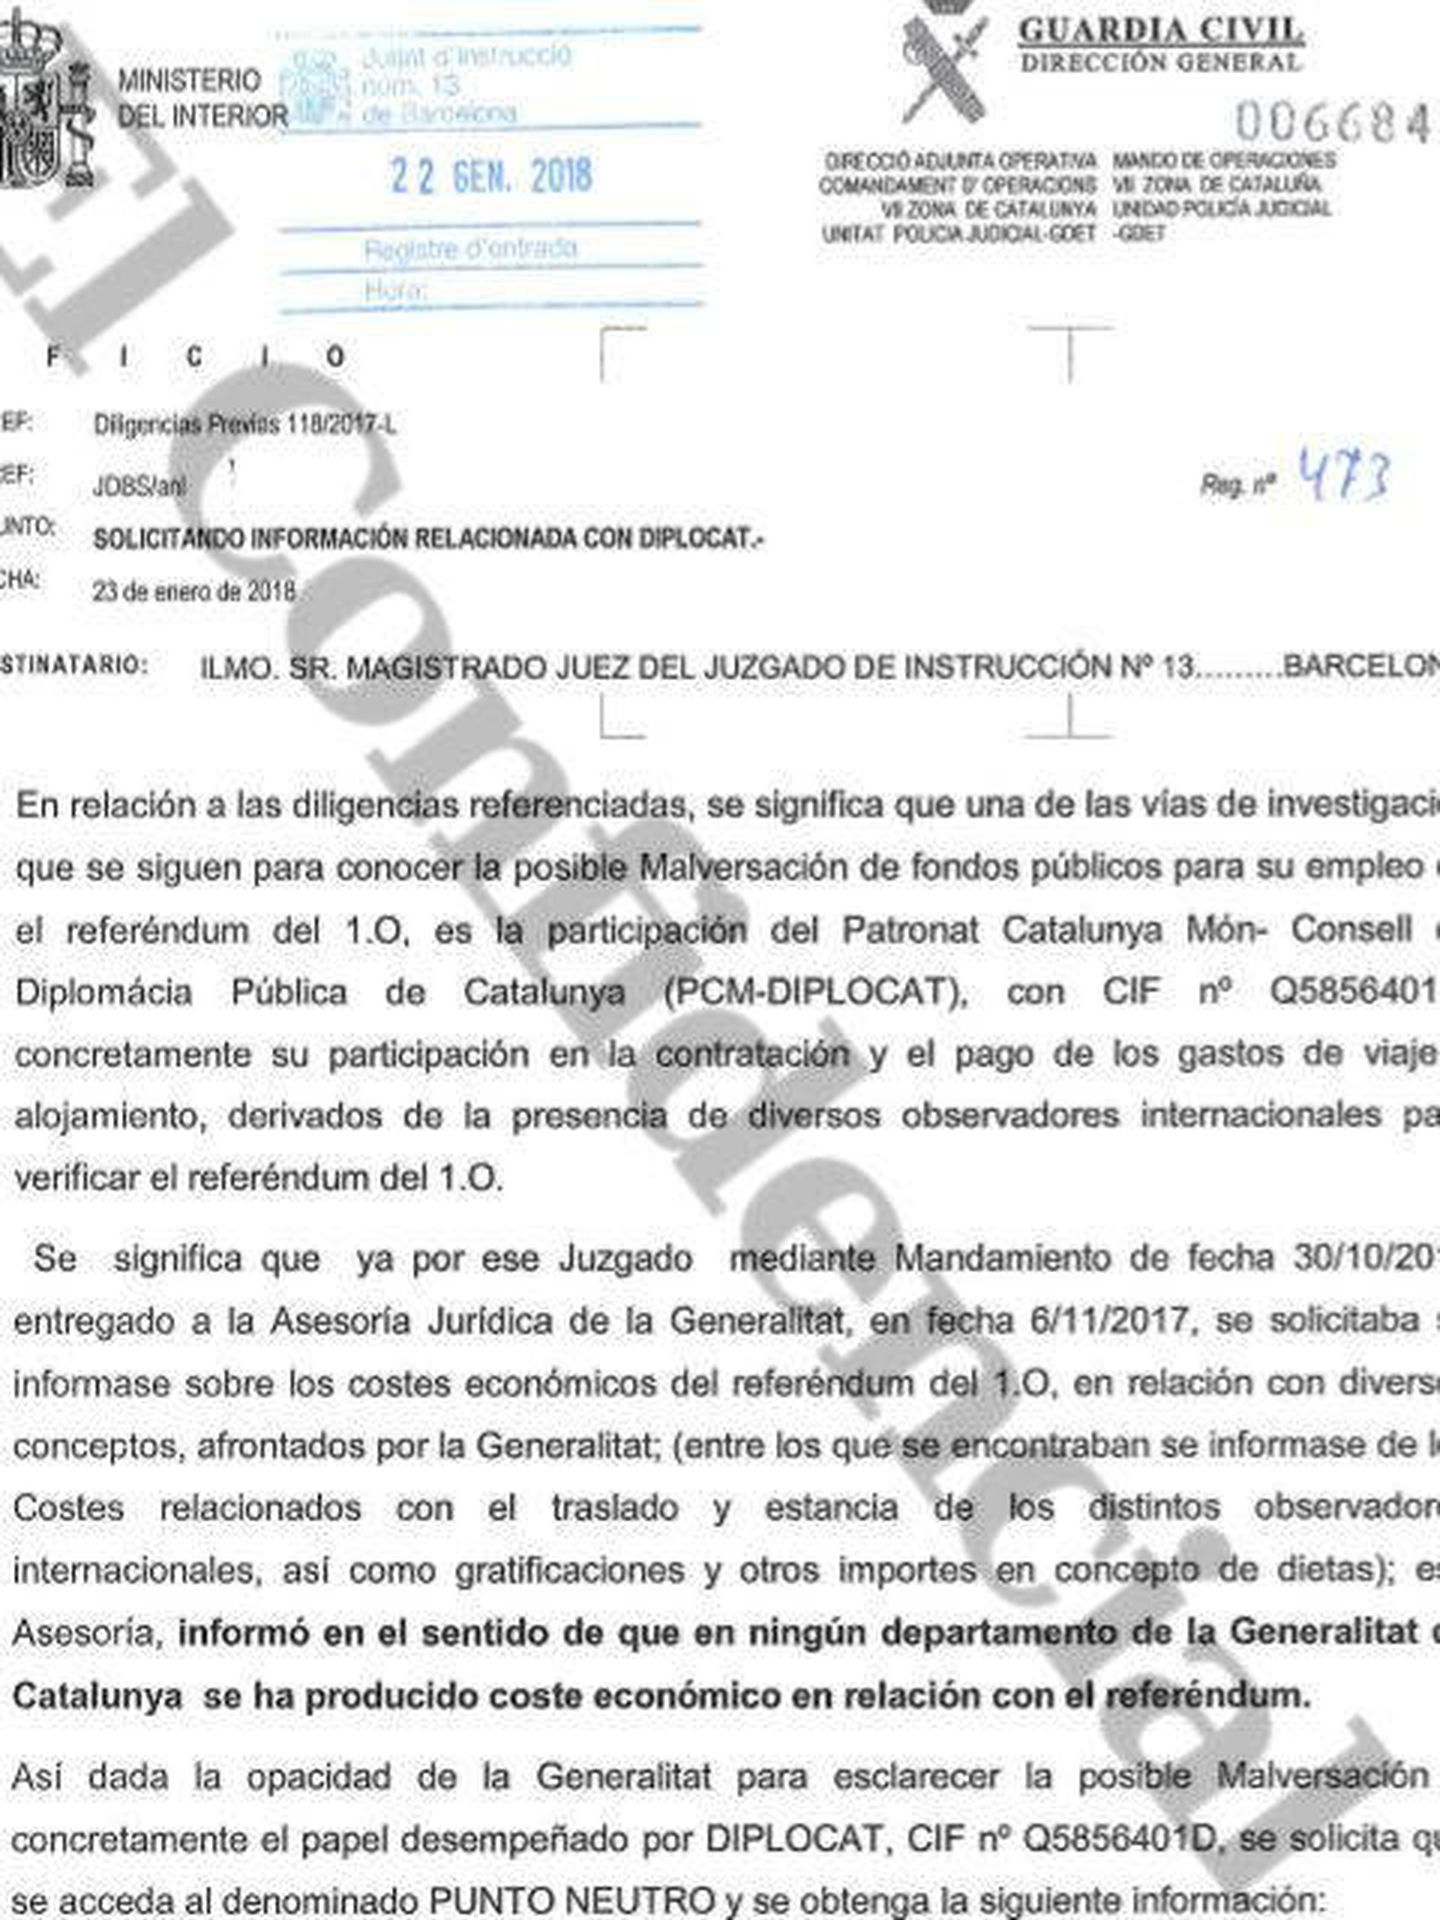 La Guardia Civil reclama en un oficio rastrear las cuentas del Diplocat. (Pinche para ampliar)